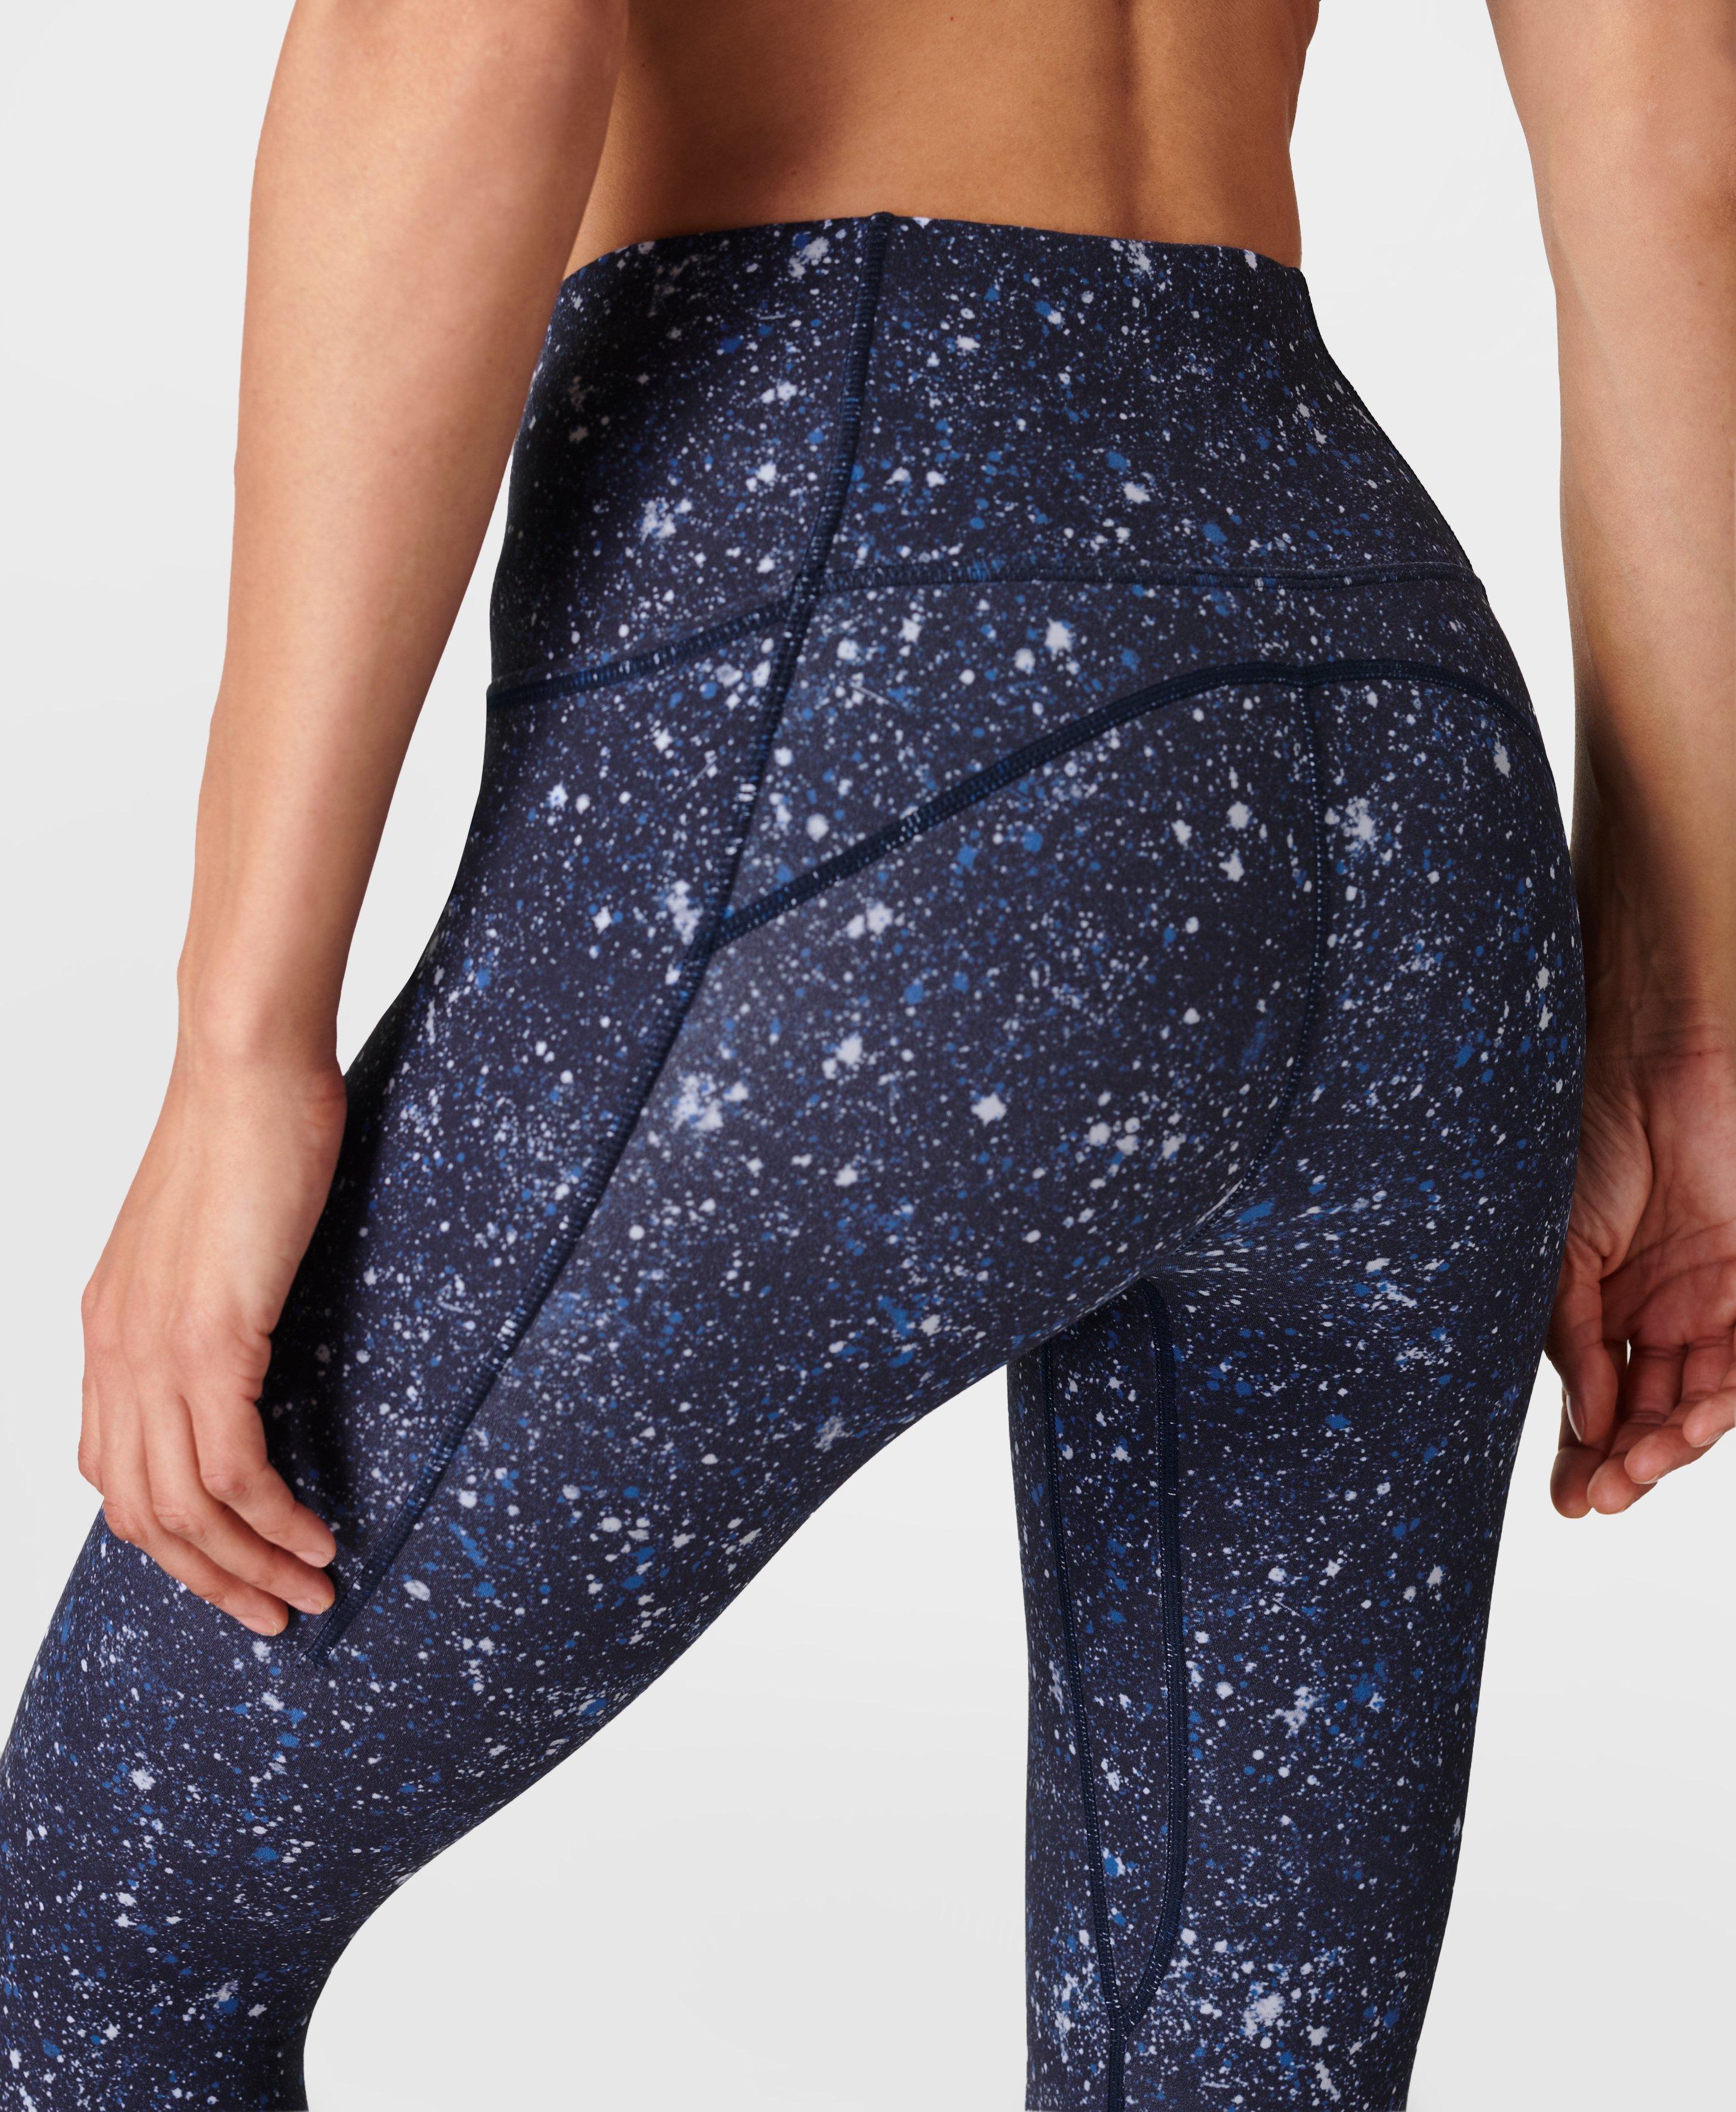 Super Soft 7/8 Yoga Leggings - Blue Multi Speckle Print, Women's Leggings